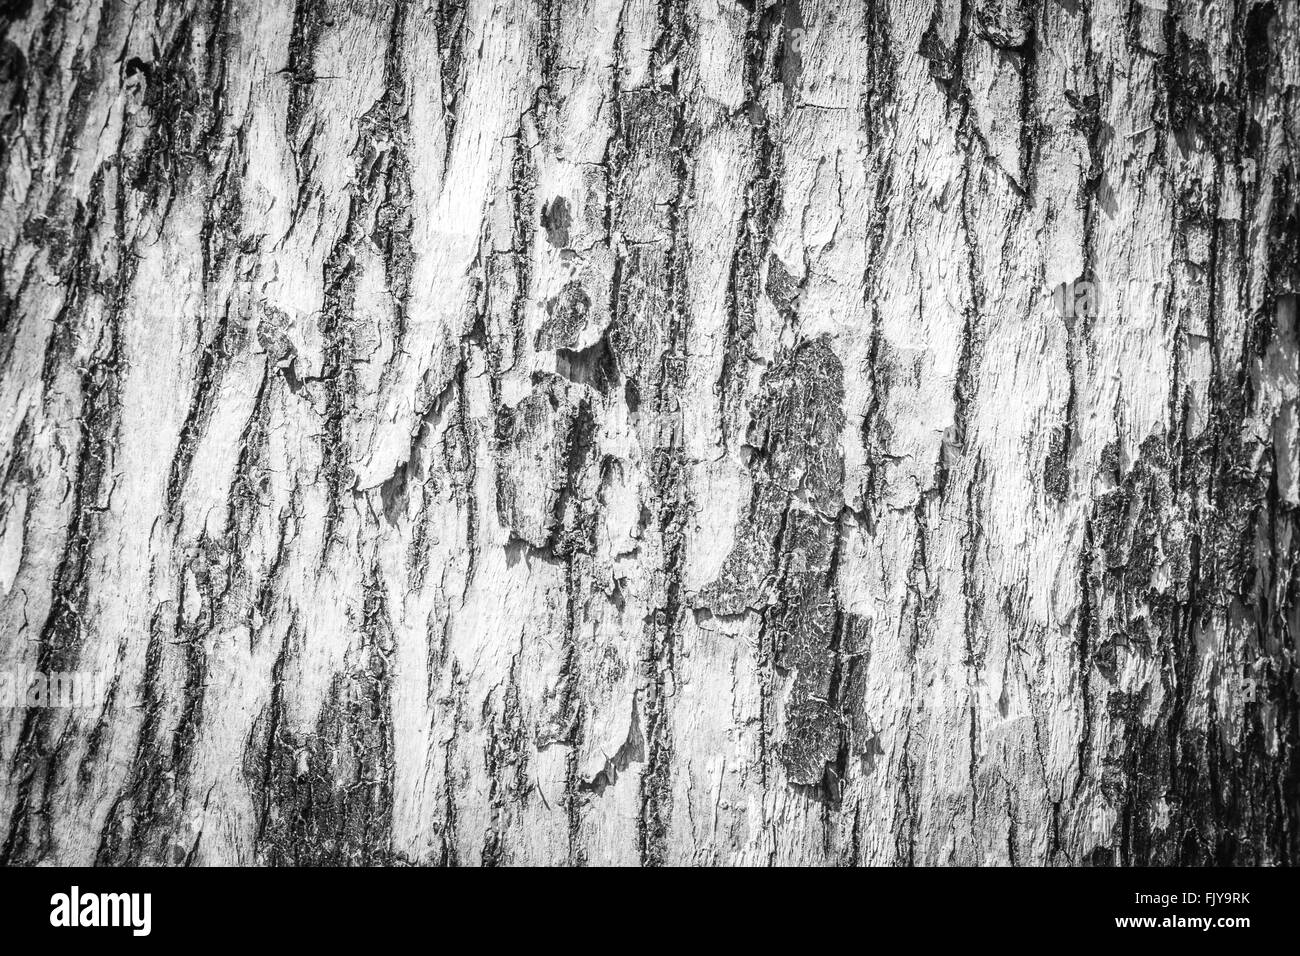 wood bark background Stock Photo